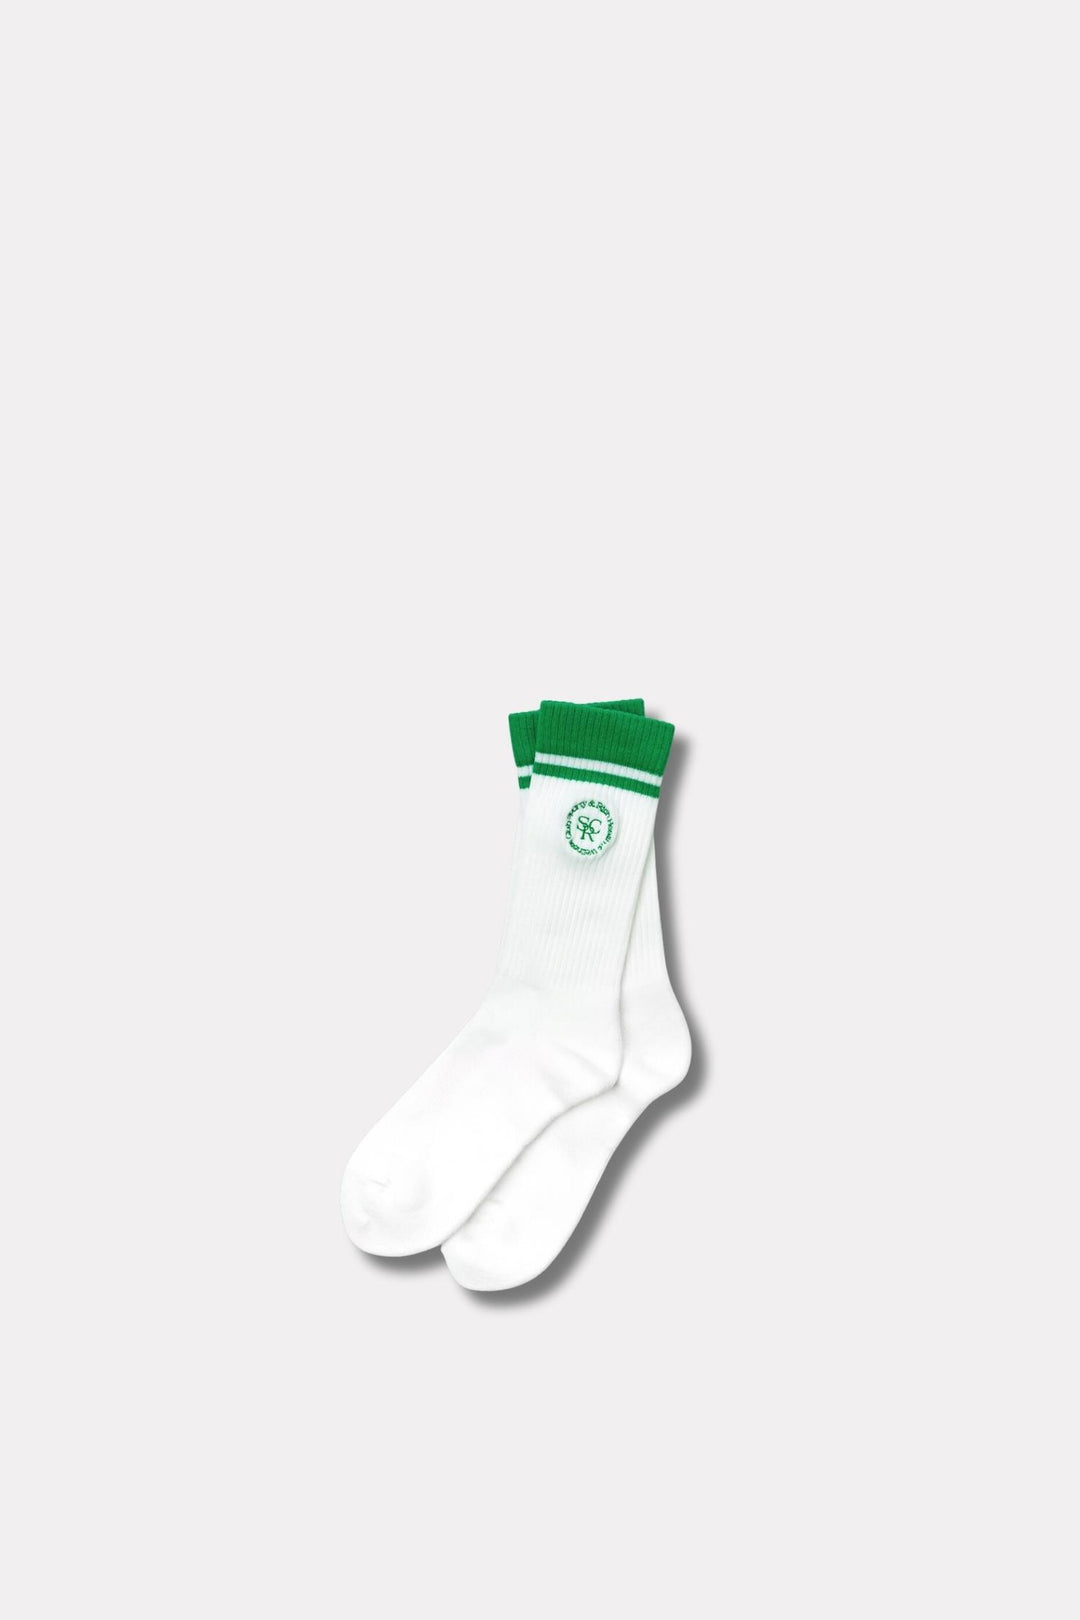 SRHWC Embroidered Socks- White/Verde